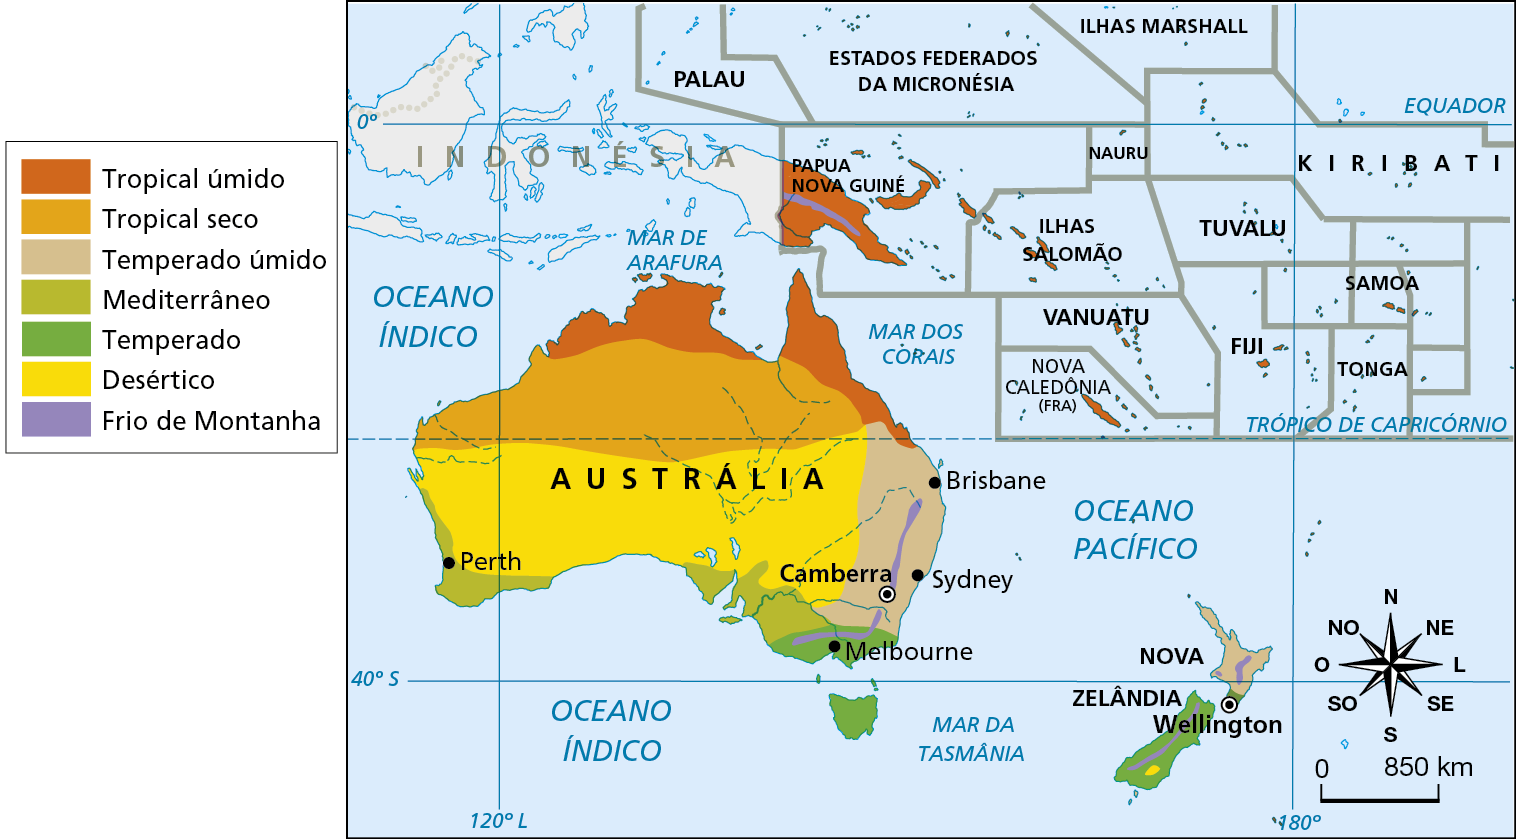 Mapa. Oceania: clima. Mapa mostrando os tipos de clima da Oceania. Tropical úmido: extremo norte da Austrália e predominante em Papua Nova Guiné. Tropical seco: porção norte e central da Austrália. Temperado úmido: costa leste da Austrália e porção norte da Nova Zelândia. Mediterrâneo: porção sul e costa oeste da Austrália. Temperado: extremo sul da Austrália e porção sul da Nova Zelândia. Desértico: porção sul e central da Austrália e fragmento na porção sul da Nova Zelândia. Frio de montanha: porção sudeste da Austrália e interior da Nova Zelândia e da Papua Nova Guiné. Na parte inferior direita, rosa dos ventos e escala de 0 a 850 quilômetros.